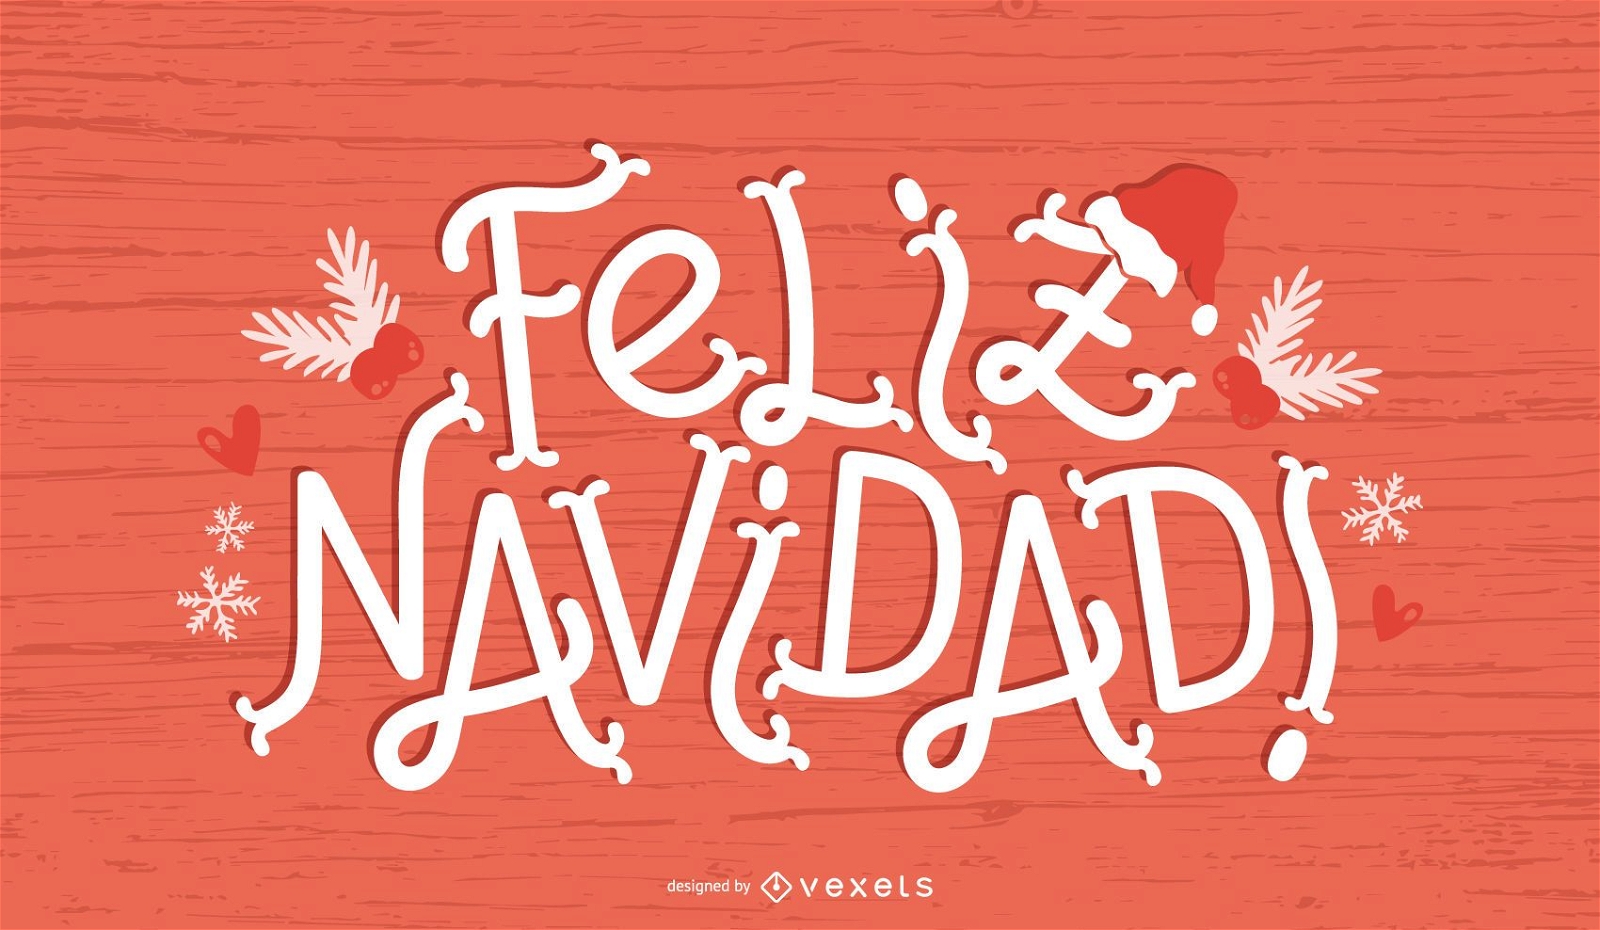 Feliz Navidad Spanish Christmas Quote Banner Vector Download